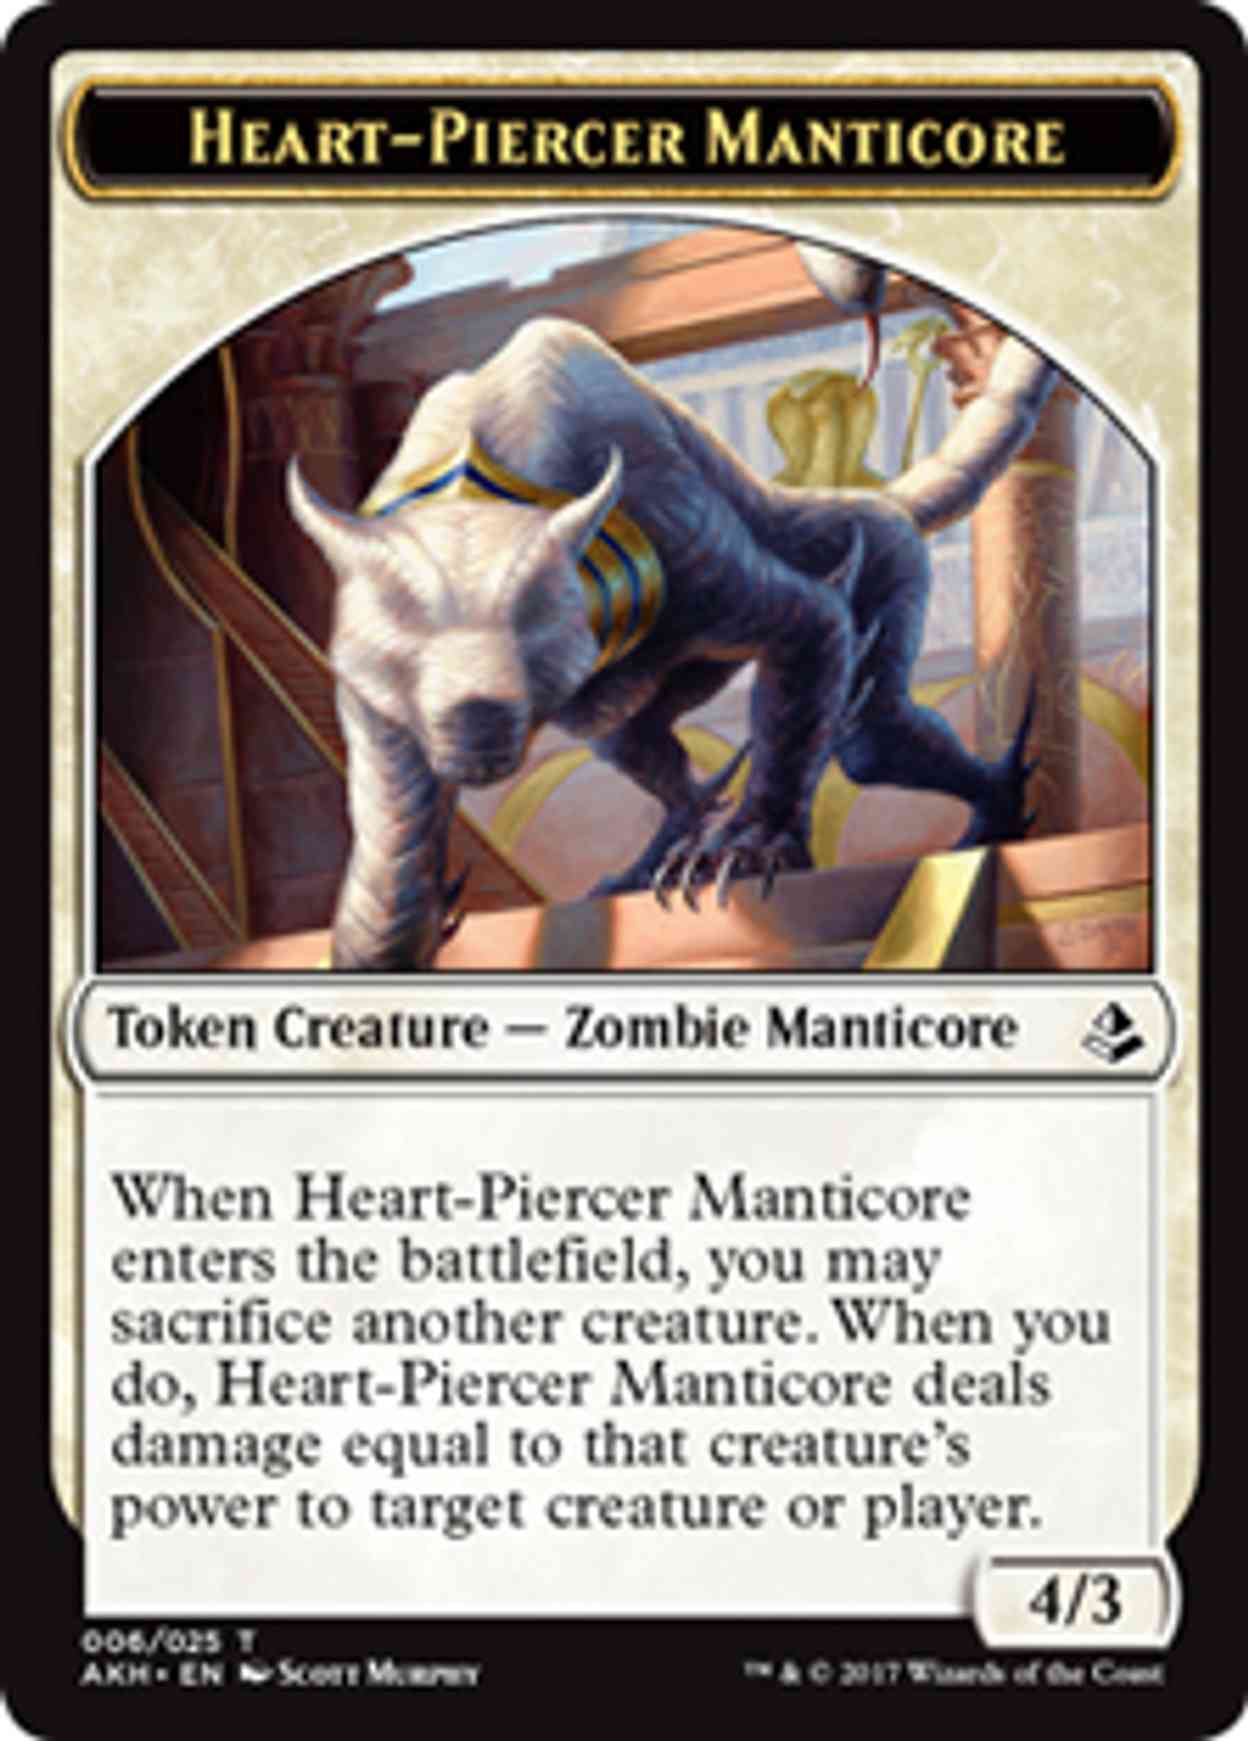 Heart-Piercer Manticore Token magic card front